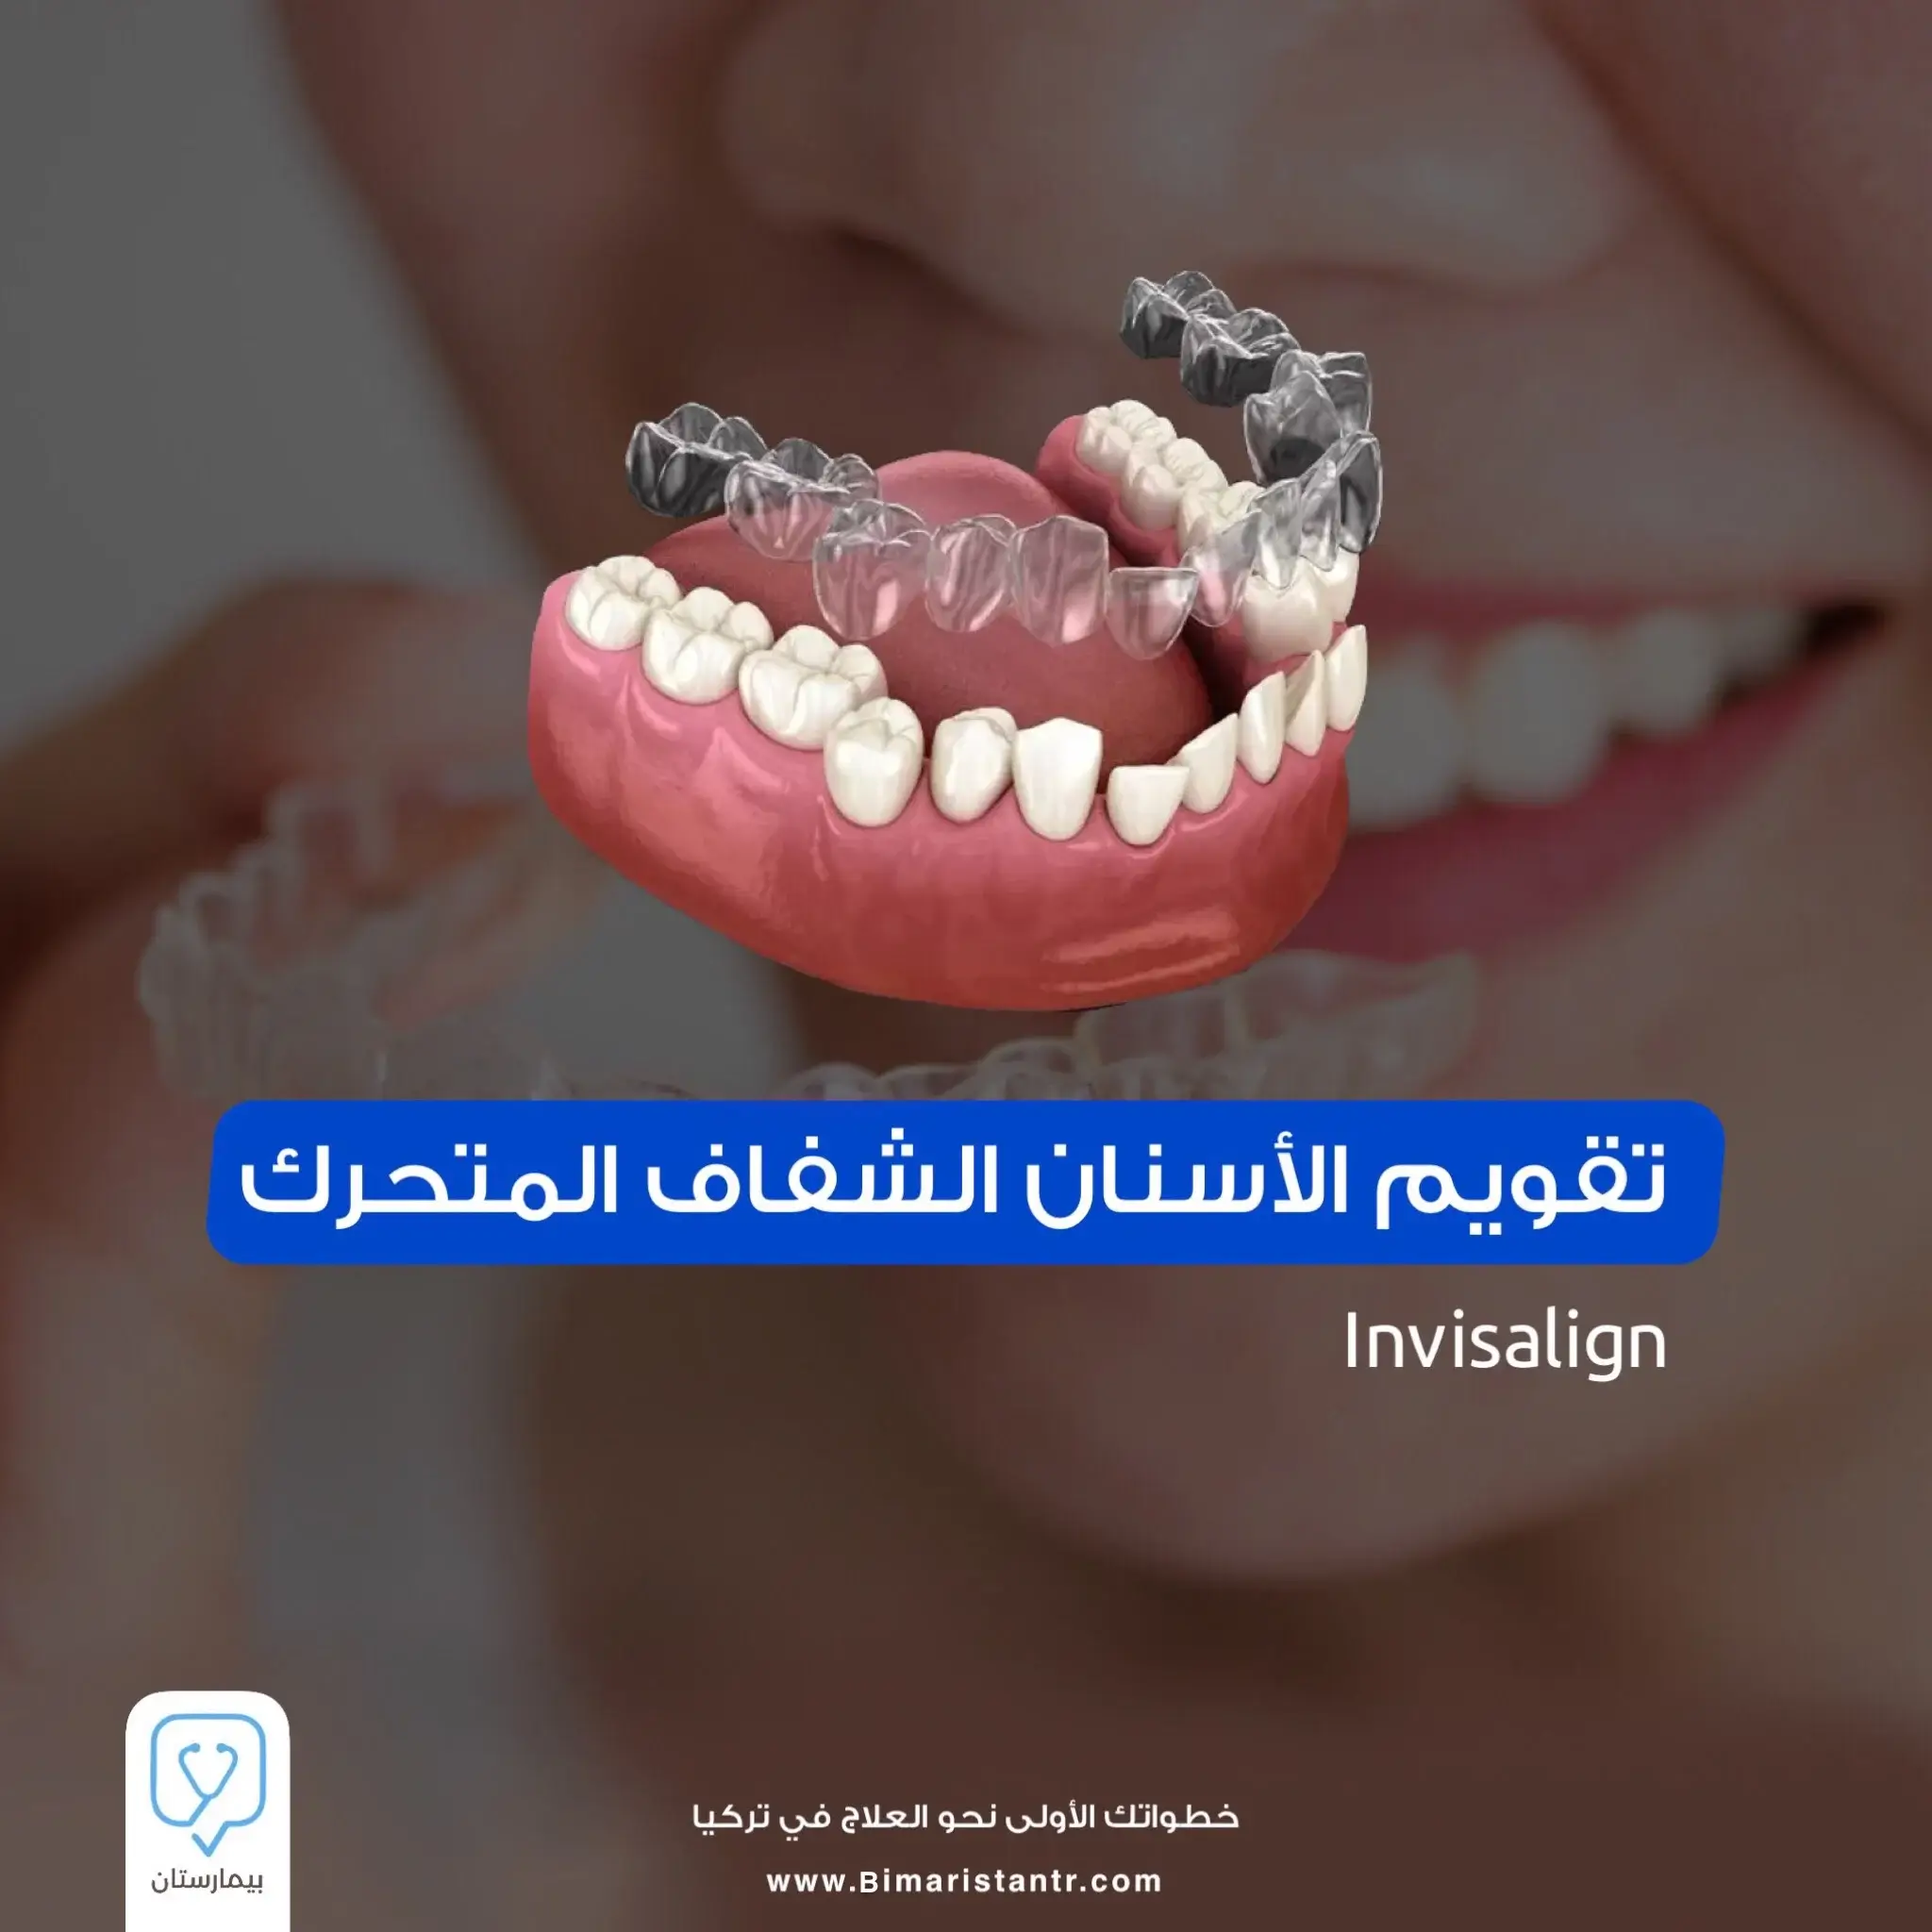 تقويم الأسنان الشفاف المتحرك